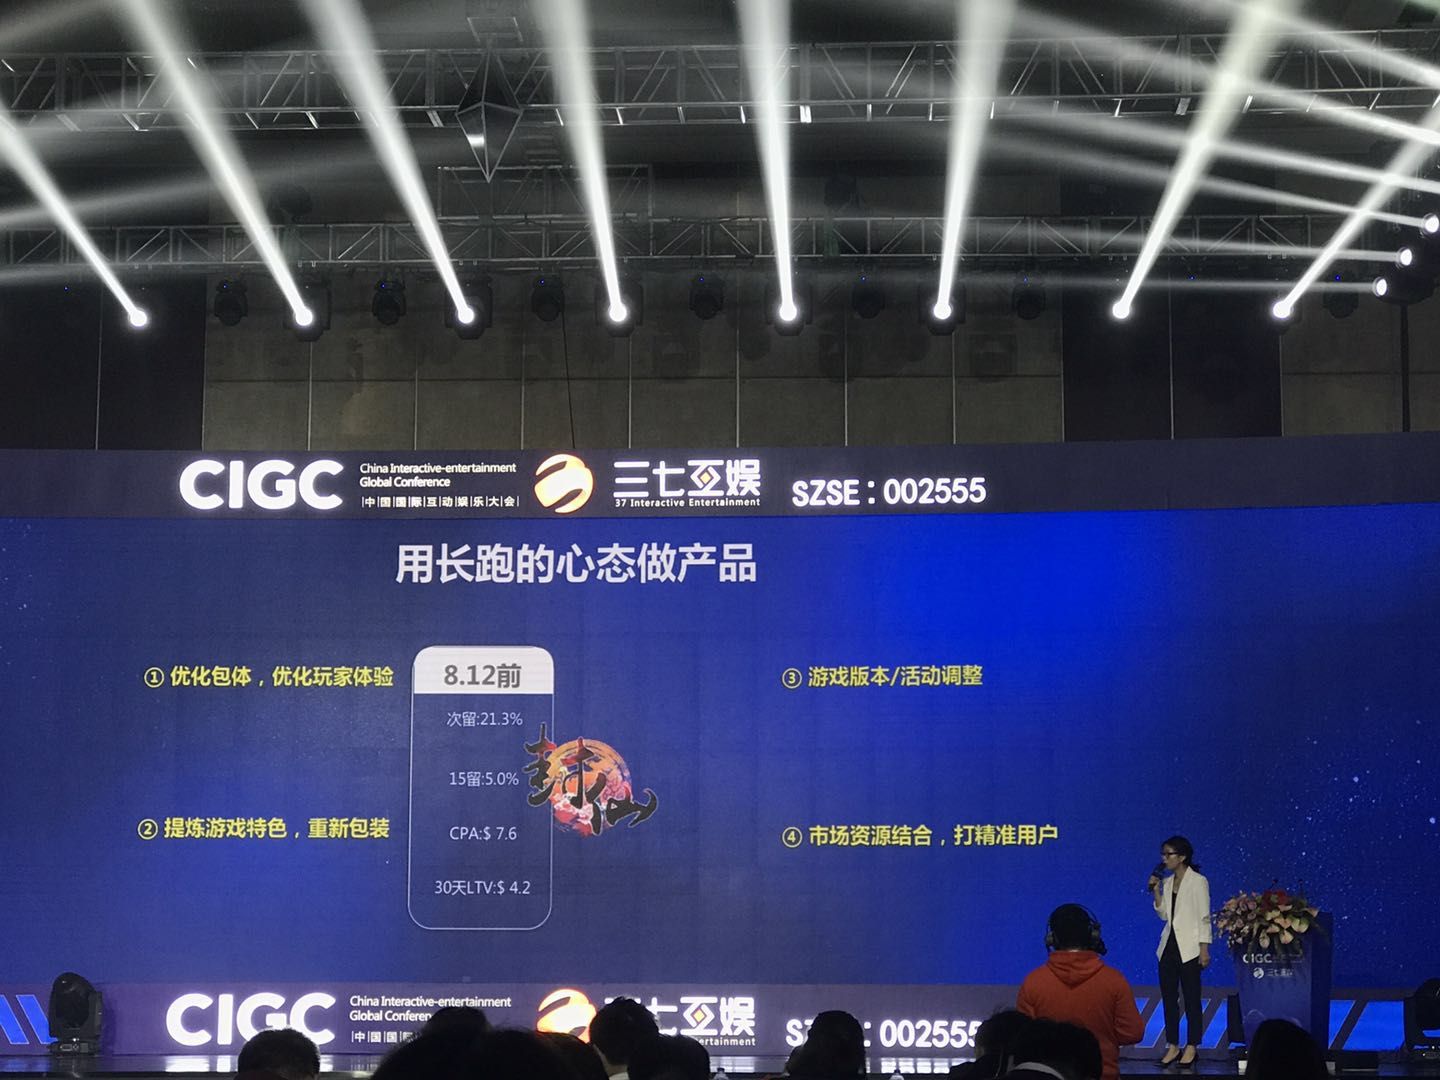 2018 年 CIGC，彭美介绍发行案例